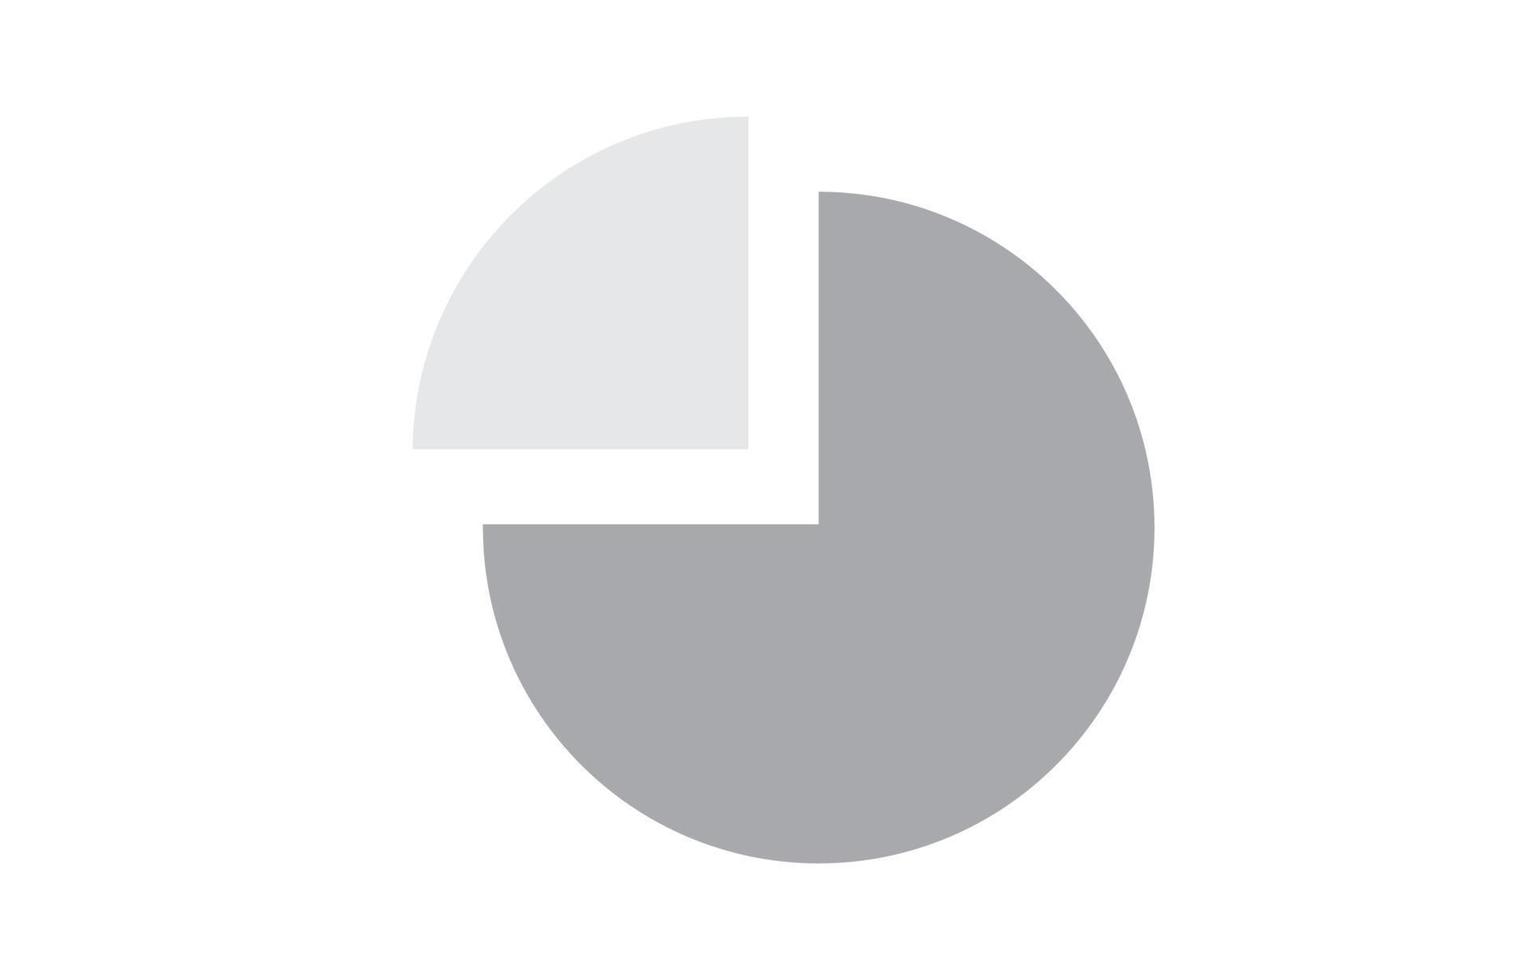 icône graphique camembert, signe de diagramme simple. style plat. illustration vectorielle isolée sur fond blanc. analyse commerciale. vecteur